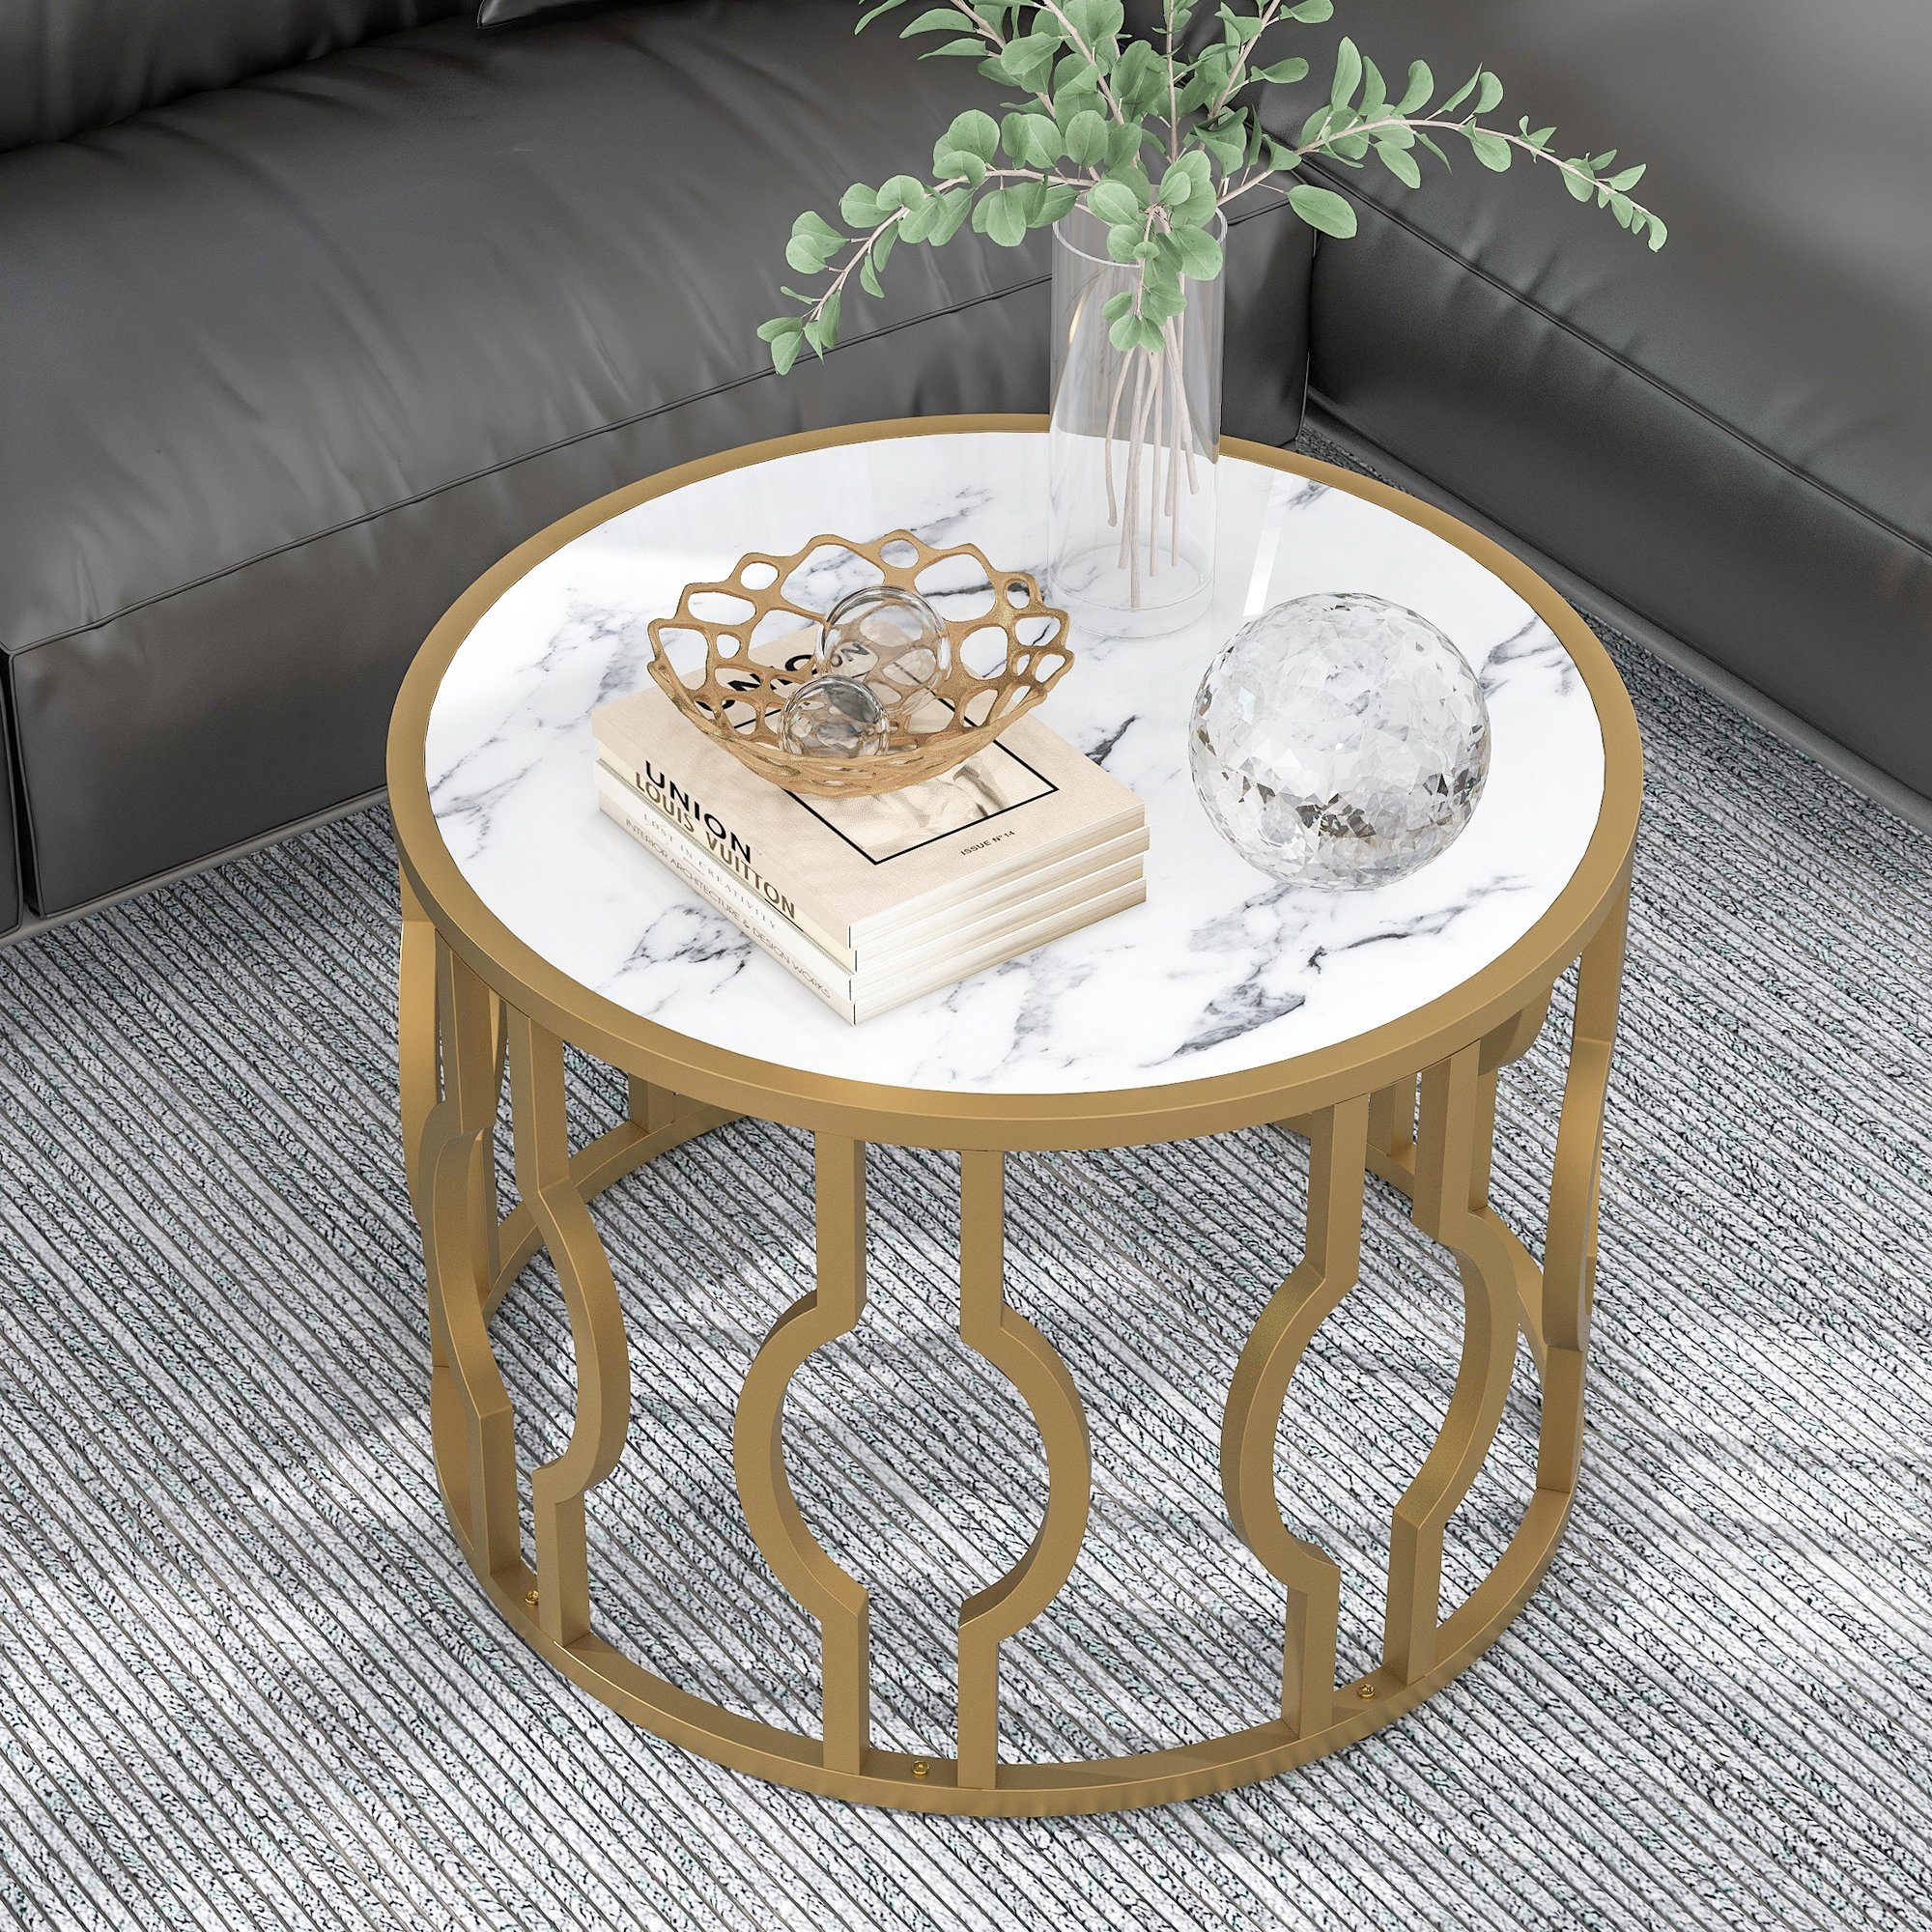 OKWISH Couchtisch Beistelltisch Marmoroptik mit golden Metallrahmen (Mamormuster 70*46.5cm), Sofatisch Rund Tisch Wohnzimmer Beistelltisch weißes